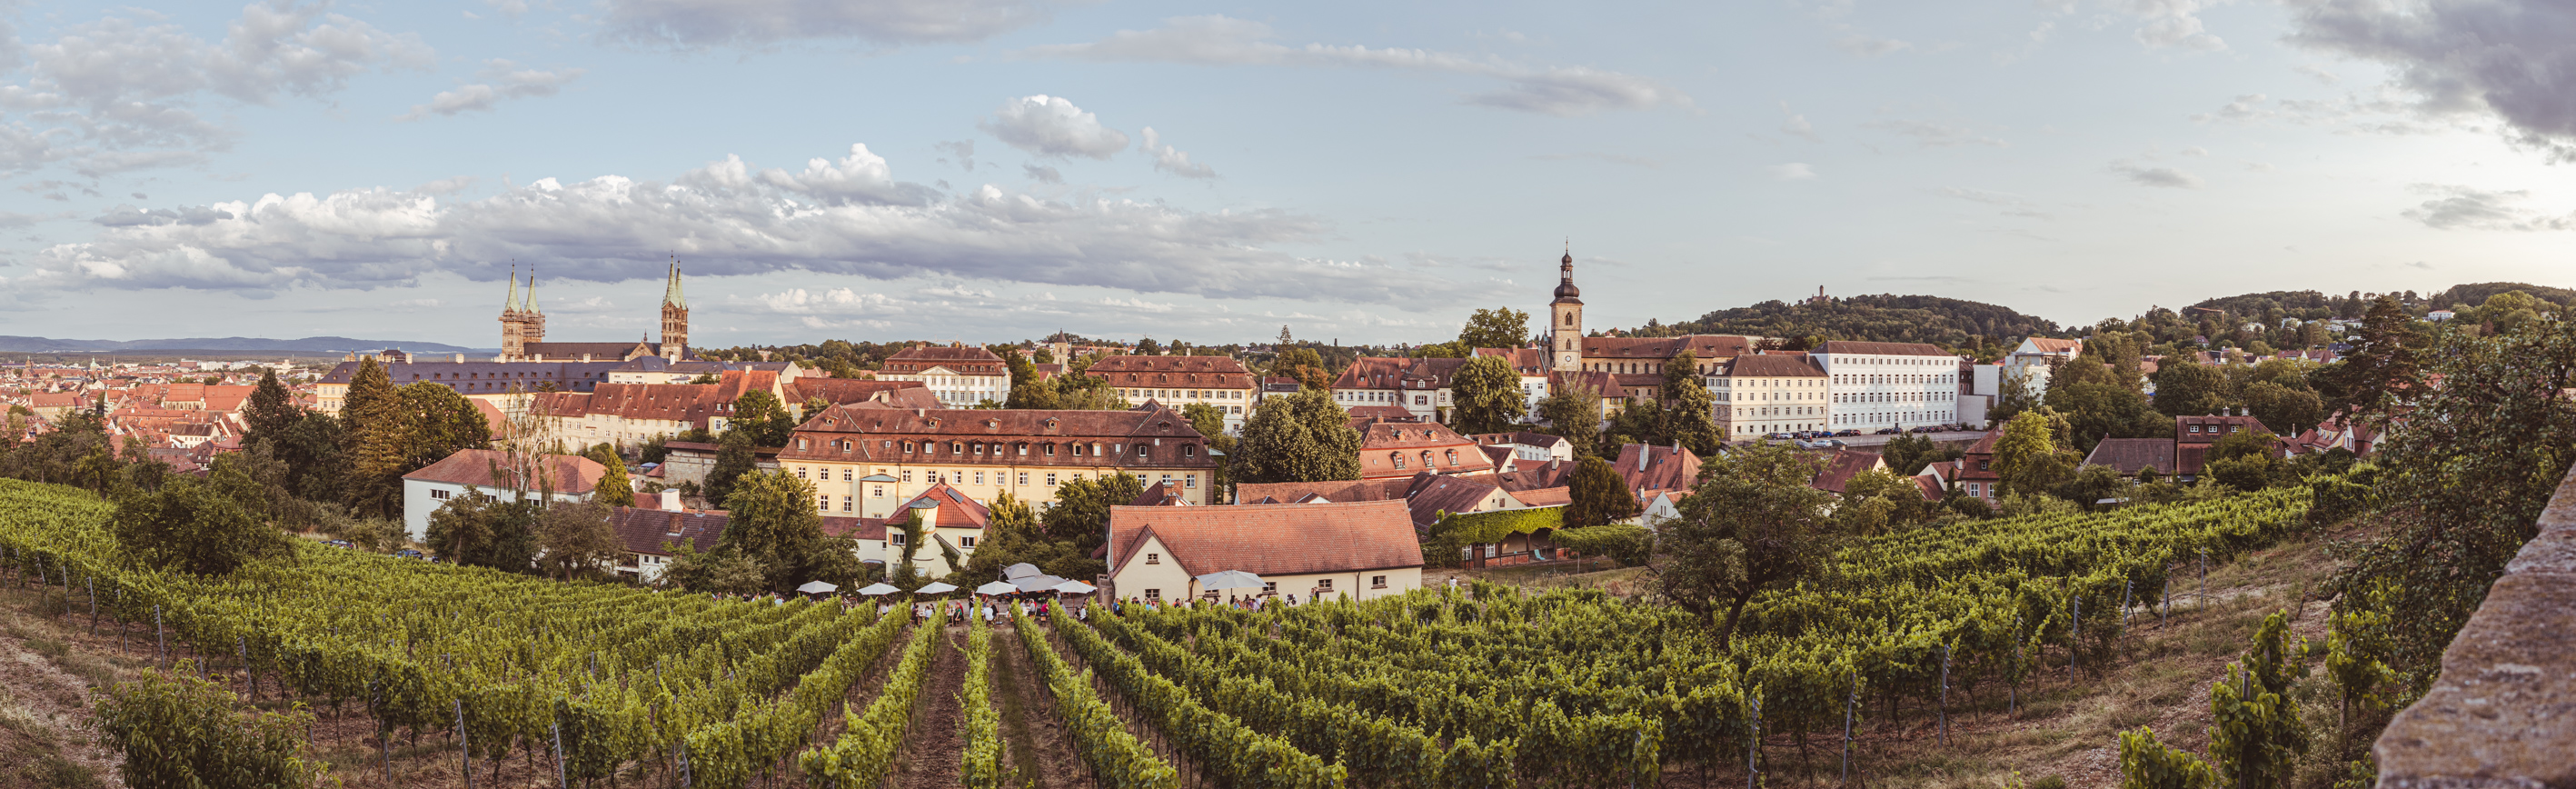 Blick über den Weinberg im Hintergrund feiernde Menschen und das Bamberger Stadtpanorama